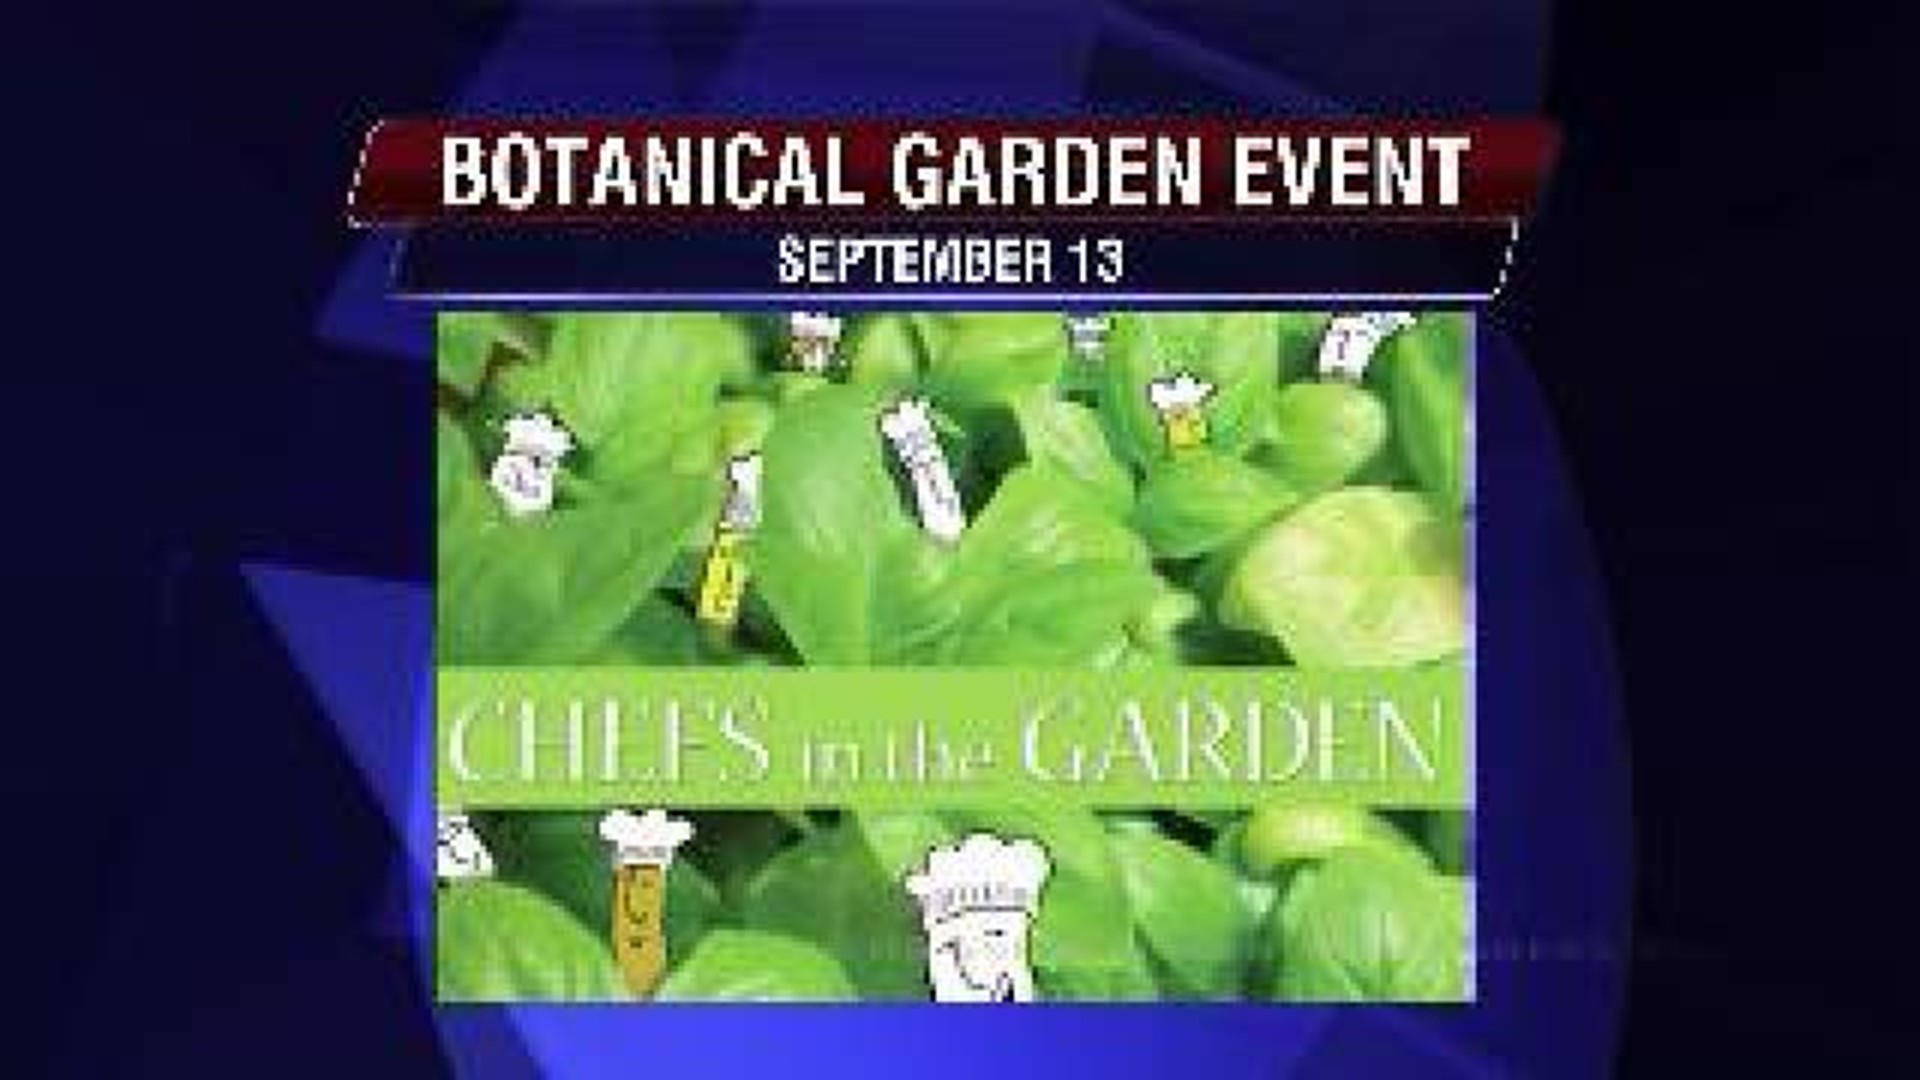 Botanical Garden Event Has a Flavor of NOLA